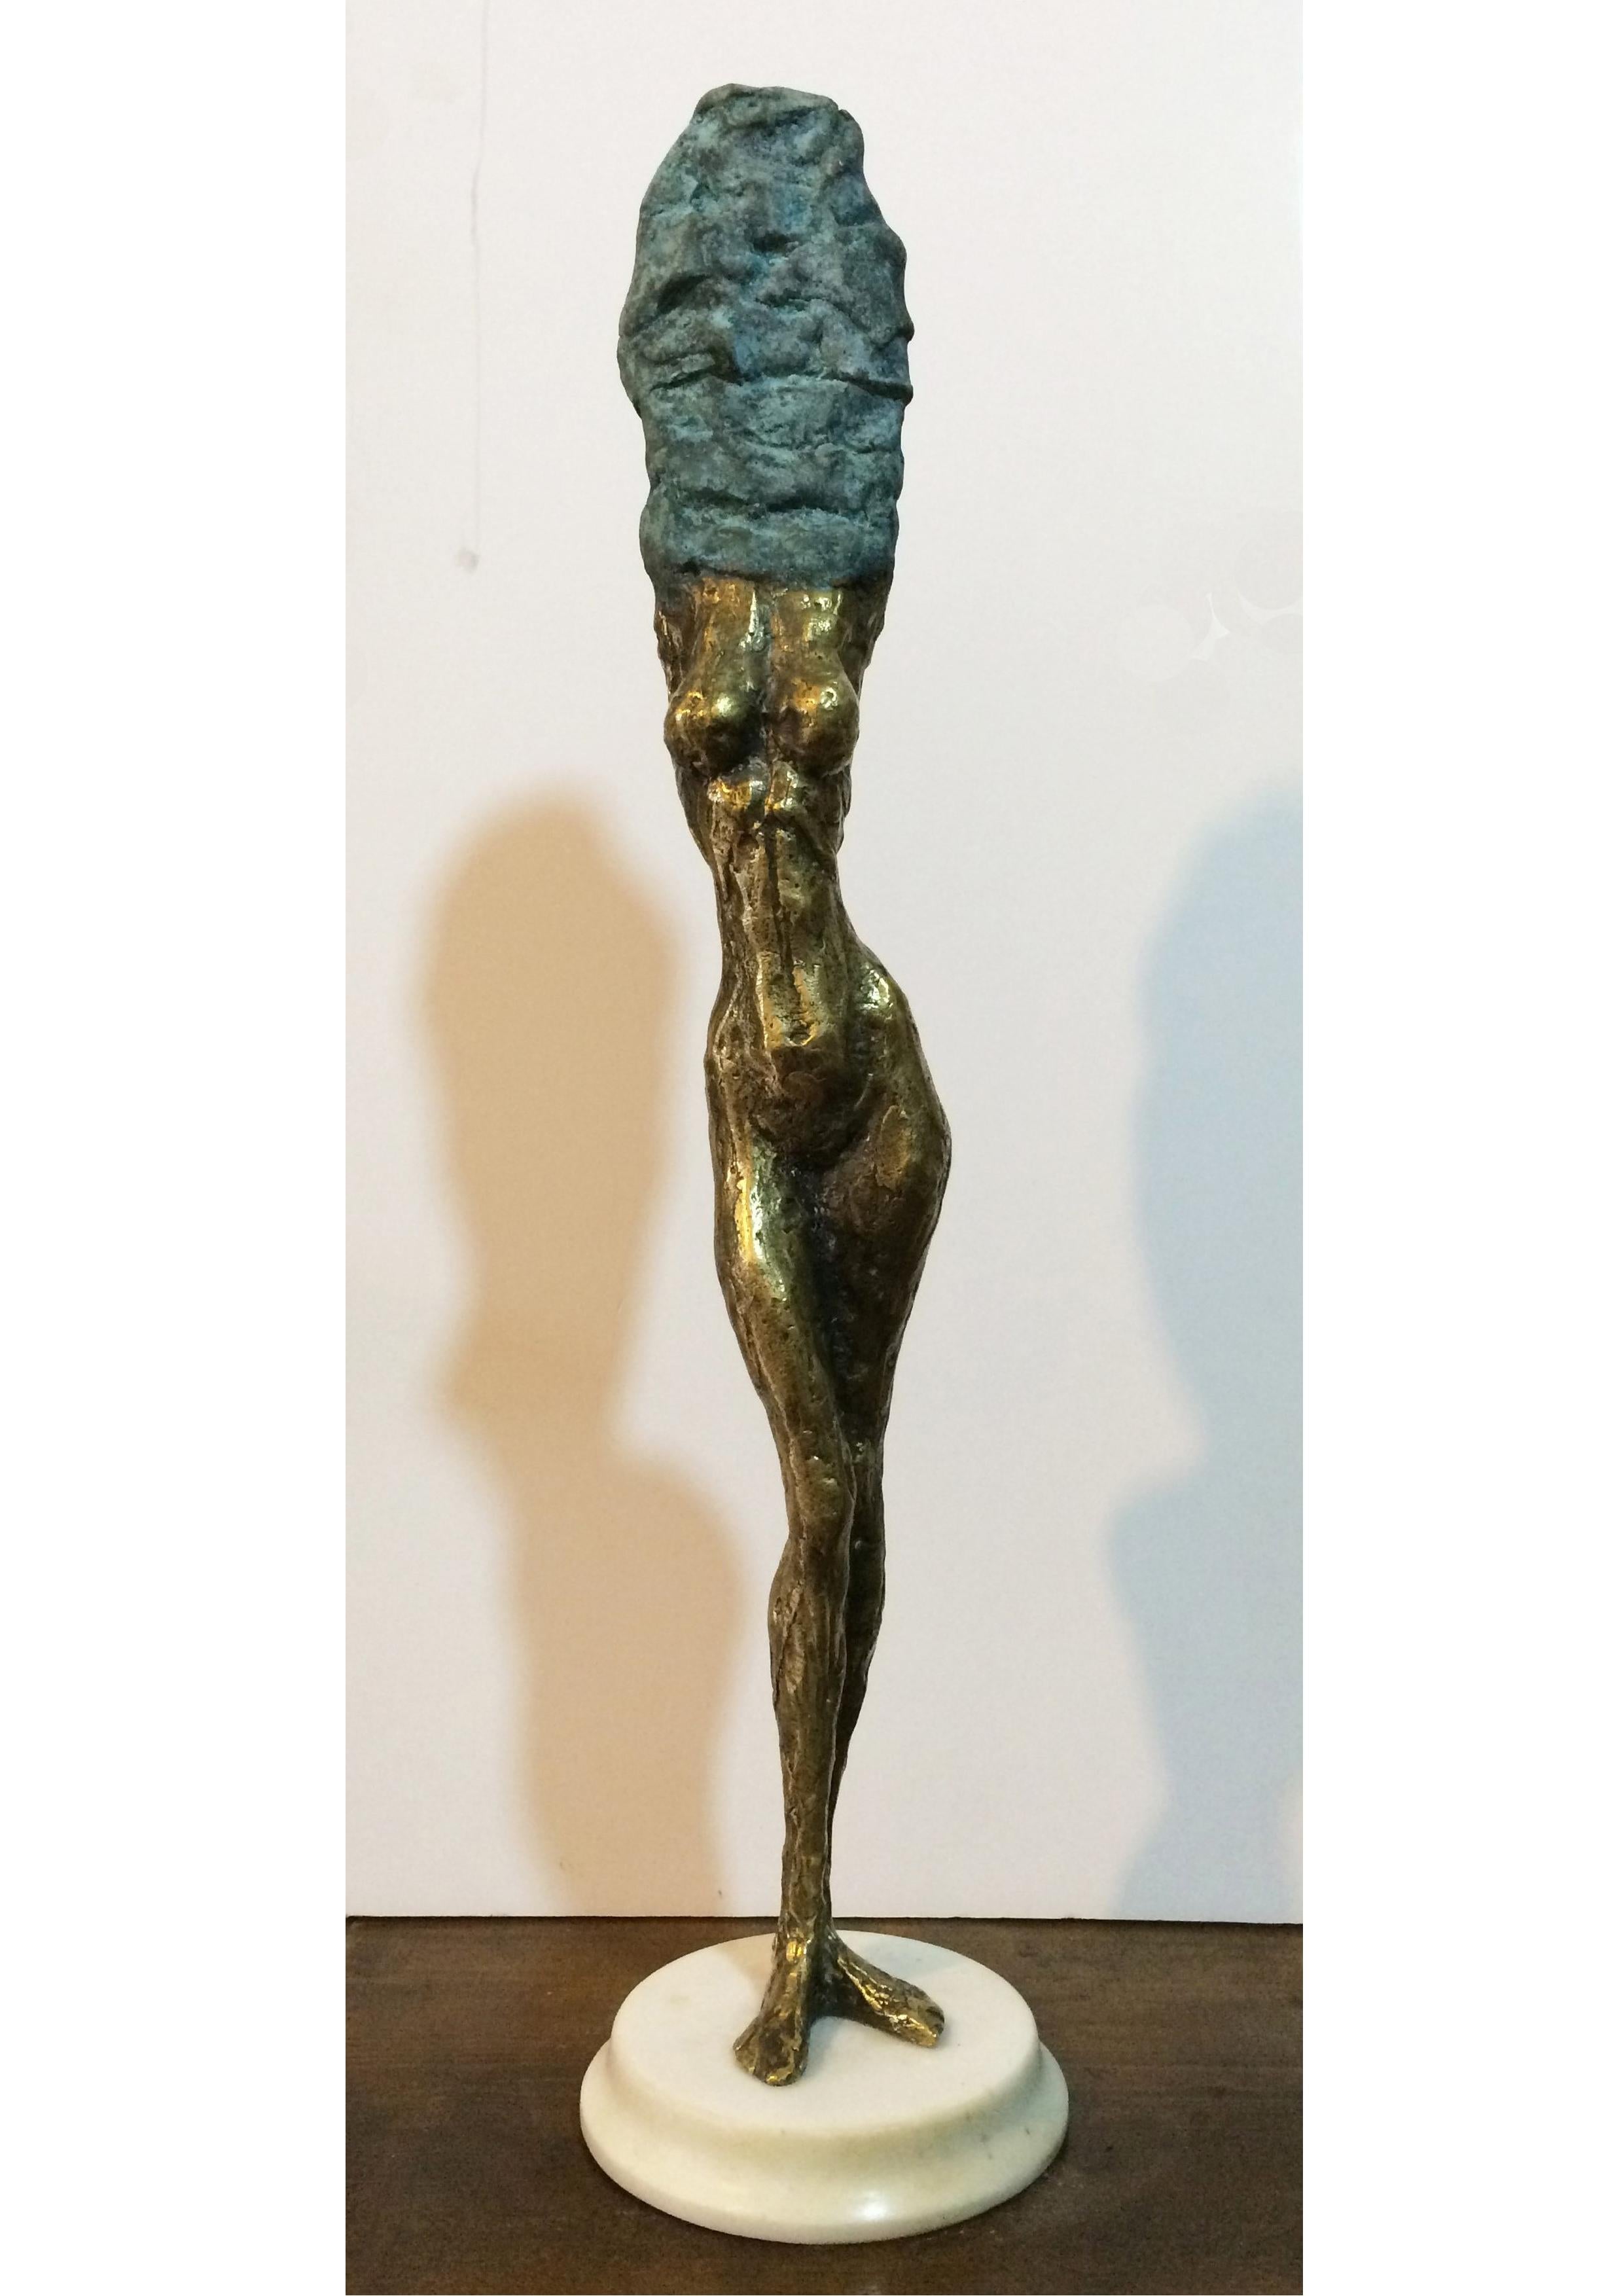 Bronze und Marmor

Irakli Tsuladze ist ein 1973 geborener georgischer Bildhauer, der in Tiflis, Georgien, lebt und arbeitet. Seine Skulpturen stellen eine eigentümliche Einheit von Substanz und Emotionen dar, bei der der Ausdruck von Gefühlen die